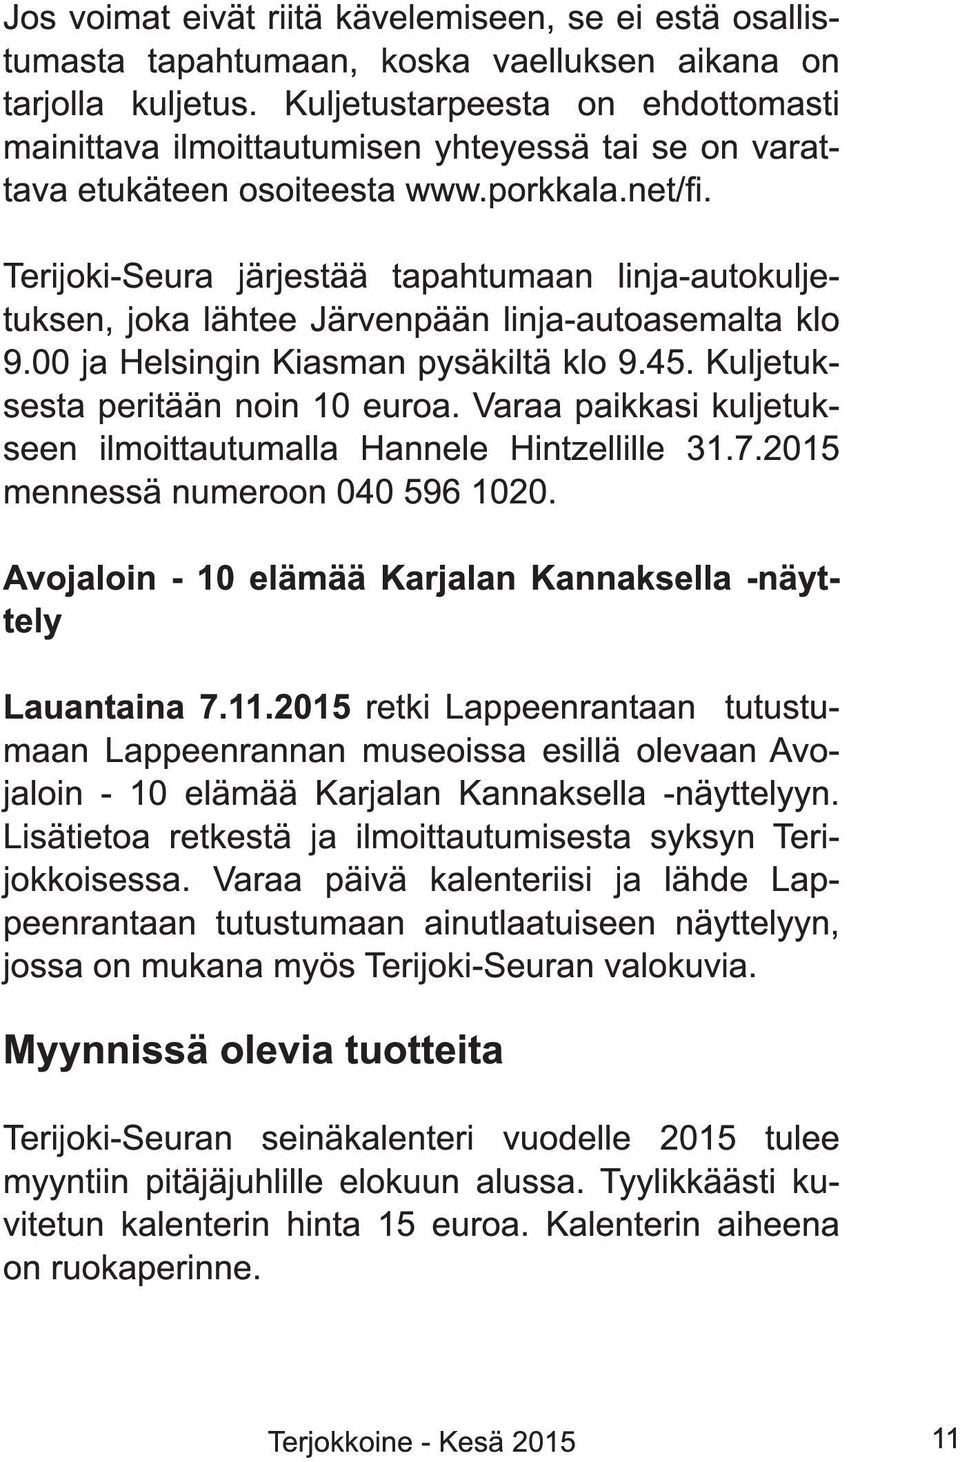 Terijoki-Seura järjestää tapahtumaan linja-autokuljetuksen, joka lähtee Järvenpään linja-autoasemalta klo 9.00 ja Helsingin Kiasman pysäkiltä klo 9.45. Kuljetuksesta peritään noin 1 0 euroa.